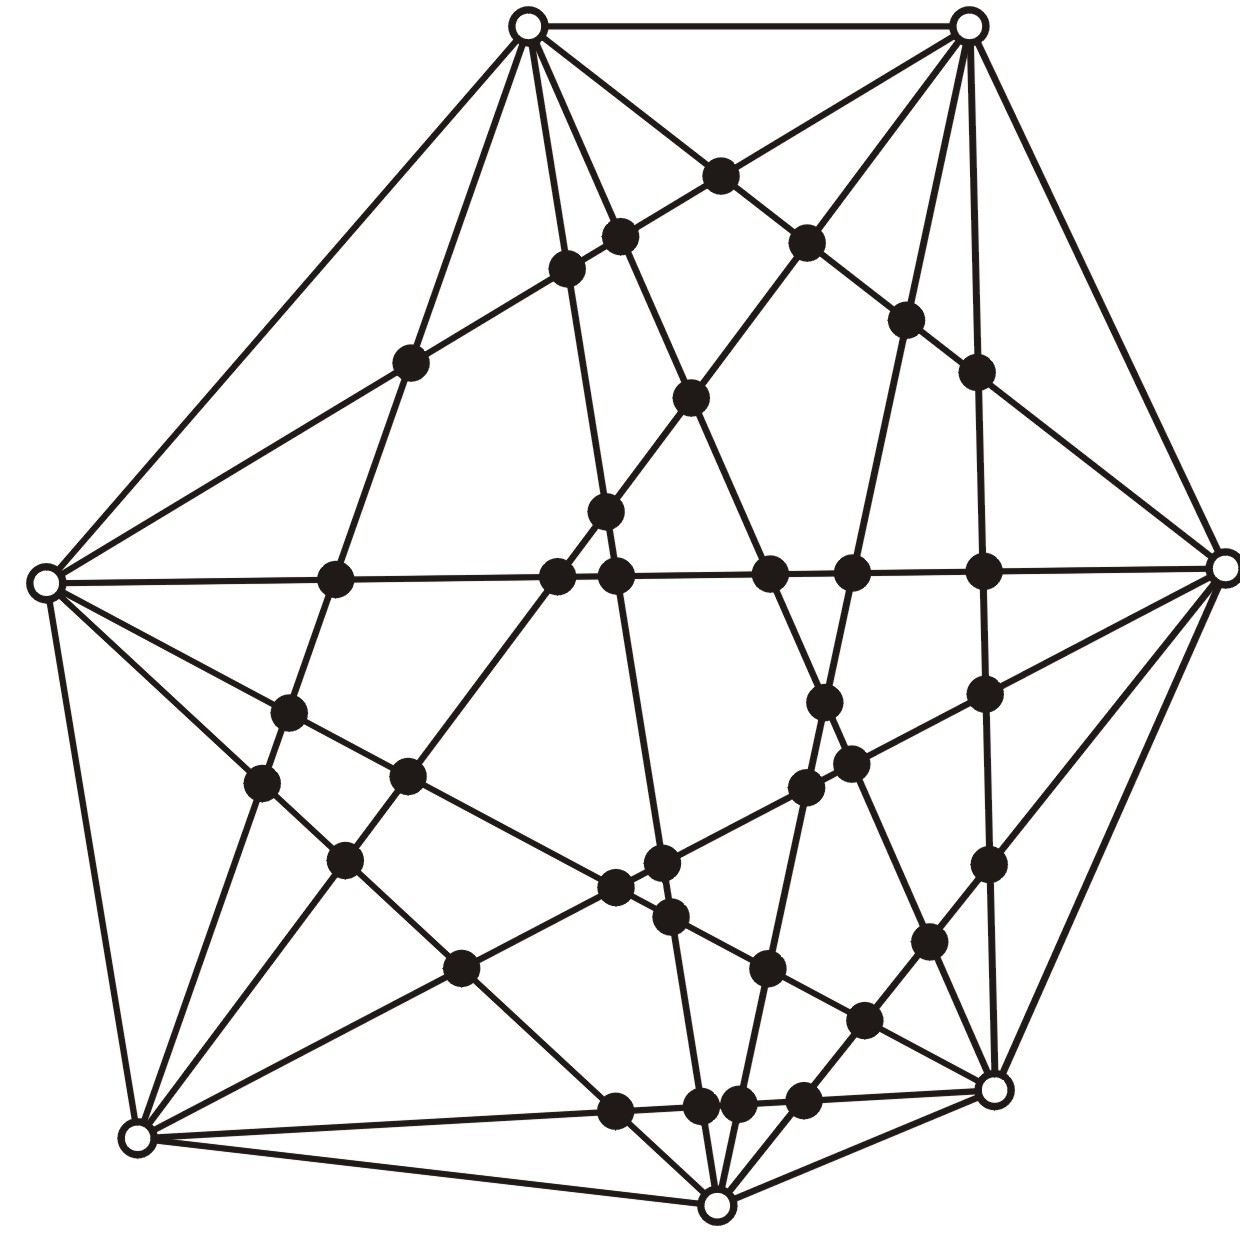 Sayısını aradığımız üçgenler dört ayrık sınıfa ayrılabilir: üç köşesi de beyaz olanlar (BBB), iki köşesi beyaz diğer köşesi siyah olanlar (BBS), iki köşesi siyah diğer köşesi beyaz olanlar (BSS), üç